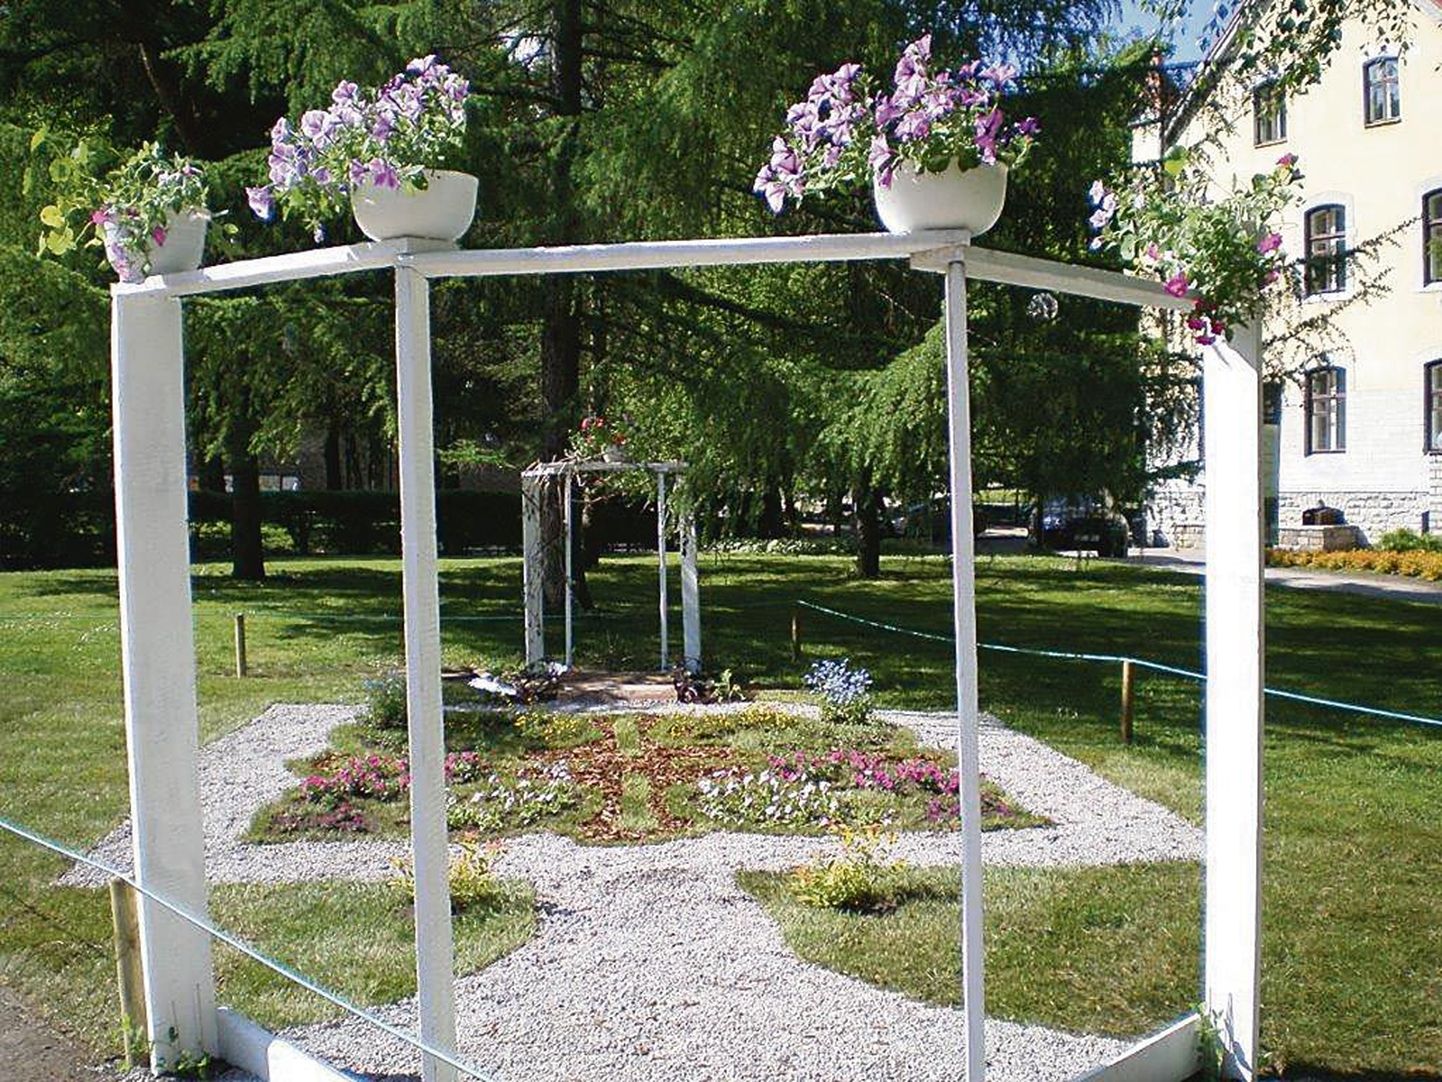 Tallinna rahvusvahelisel lillefestivalil kujundasid Liis Ellert ja Saima Tišler platsi, lähtudes Voltveti mõisa pargist ja paruni vaimust, sellest ka nimi Voltveti Vaim.